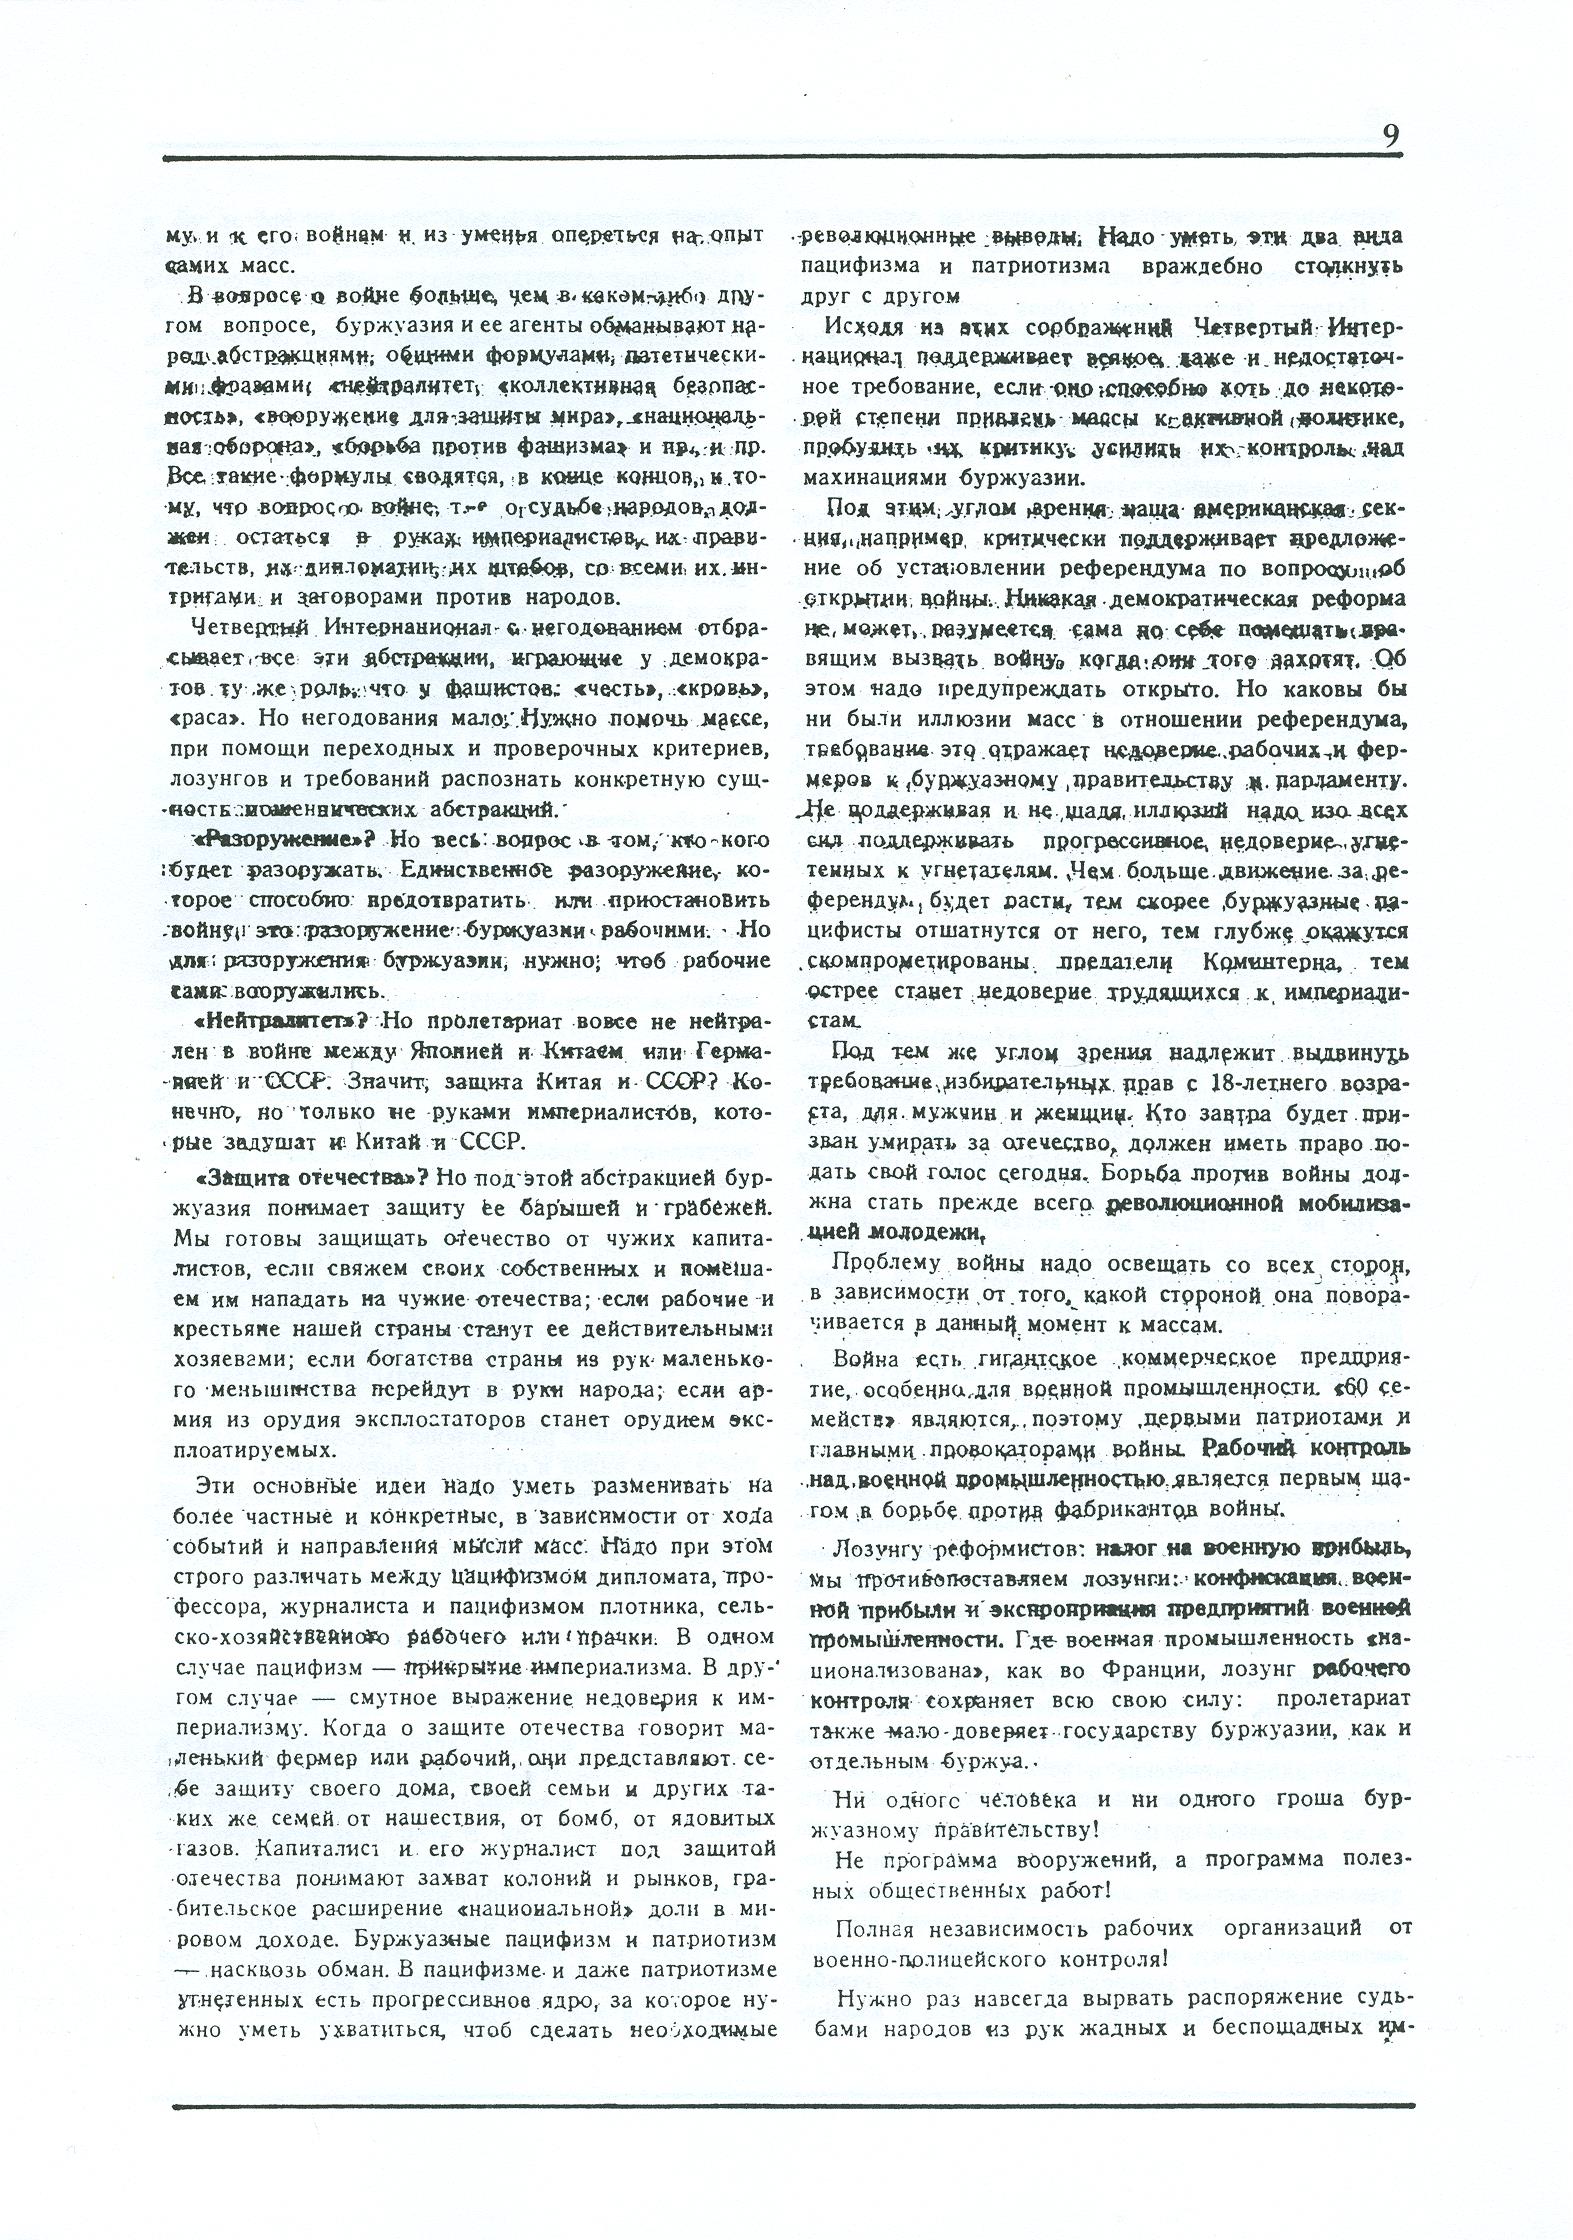 Dagli archivi del bolscevismo n. 1 (marzo 1986) - pag. 9